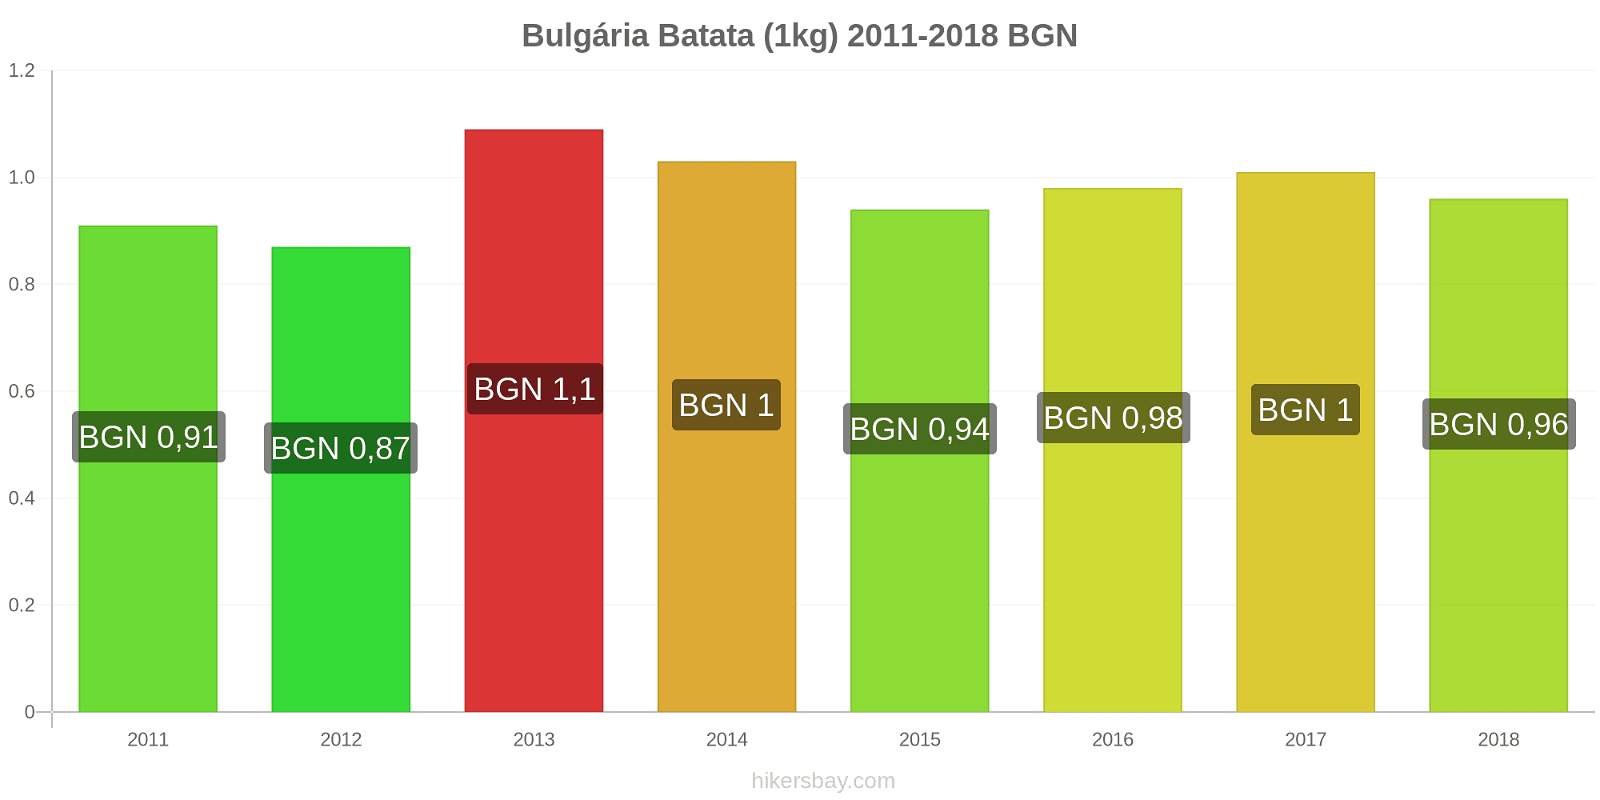 Bulgária mudanças de preços Batatas (1kg) hikersbay.com